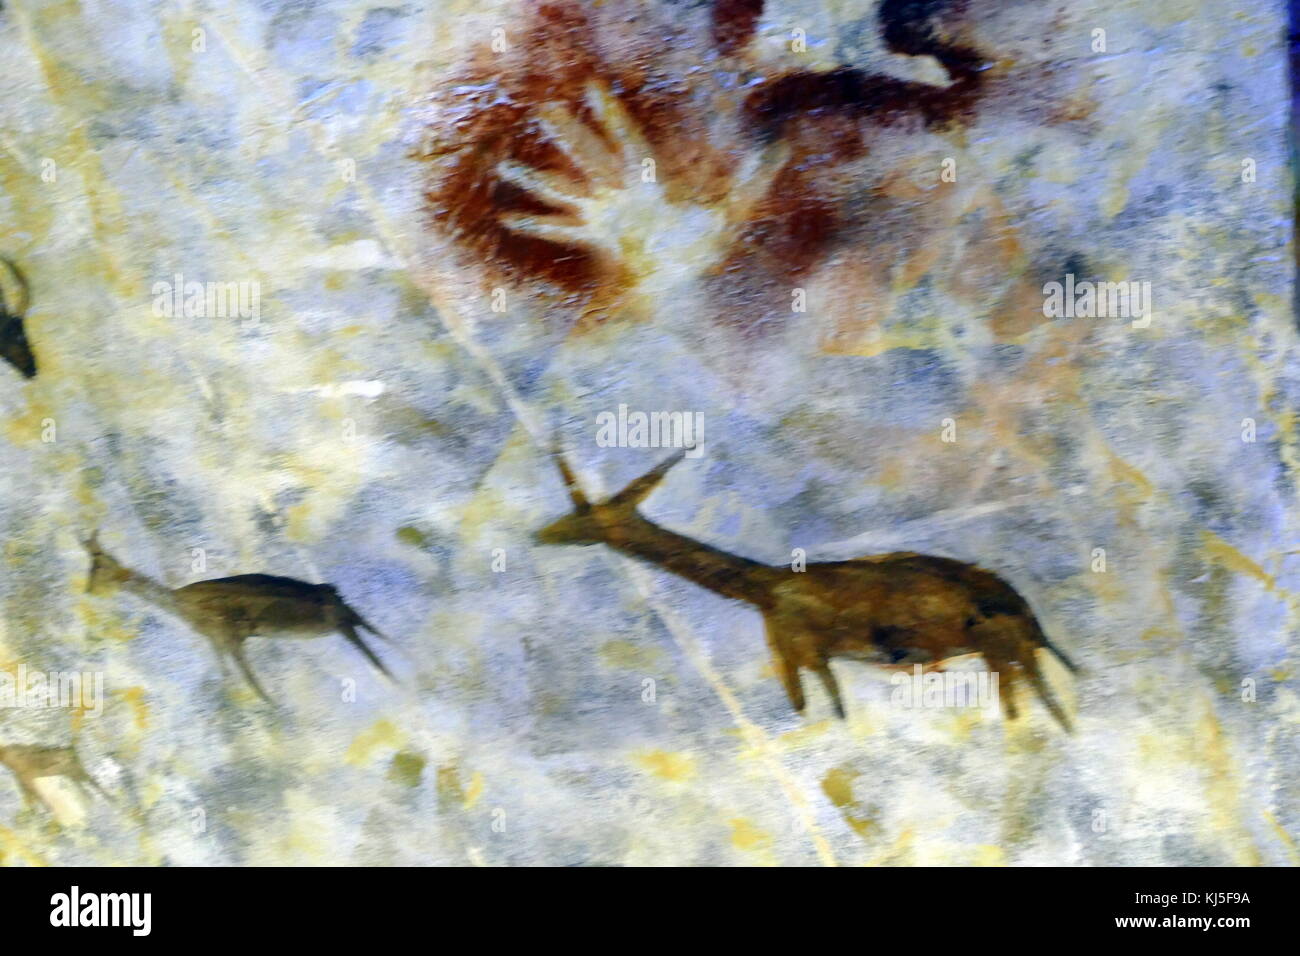 Pittura rupestre trovata nella Grotta di Altamira, situato in Cantabria, Spagna, risalente al Paleolitico Superiore periodo. Foto Stock